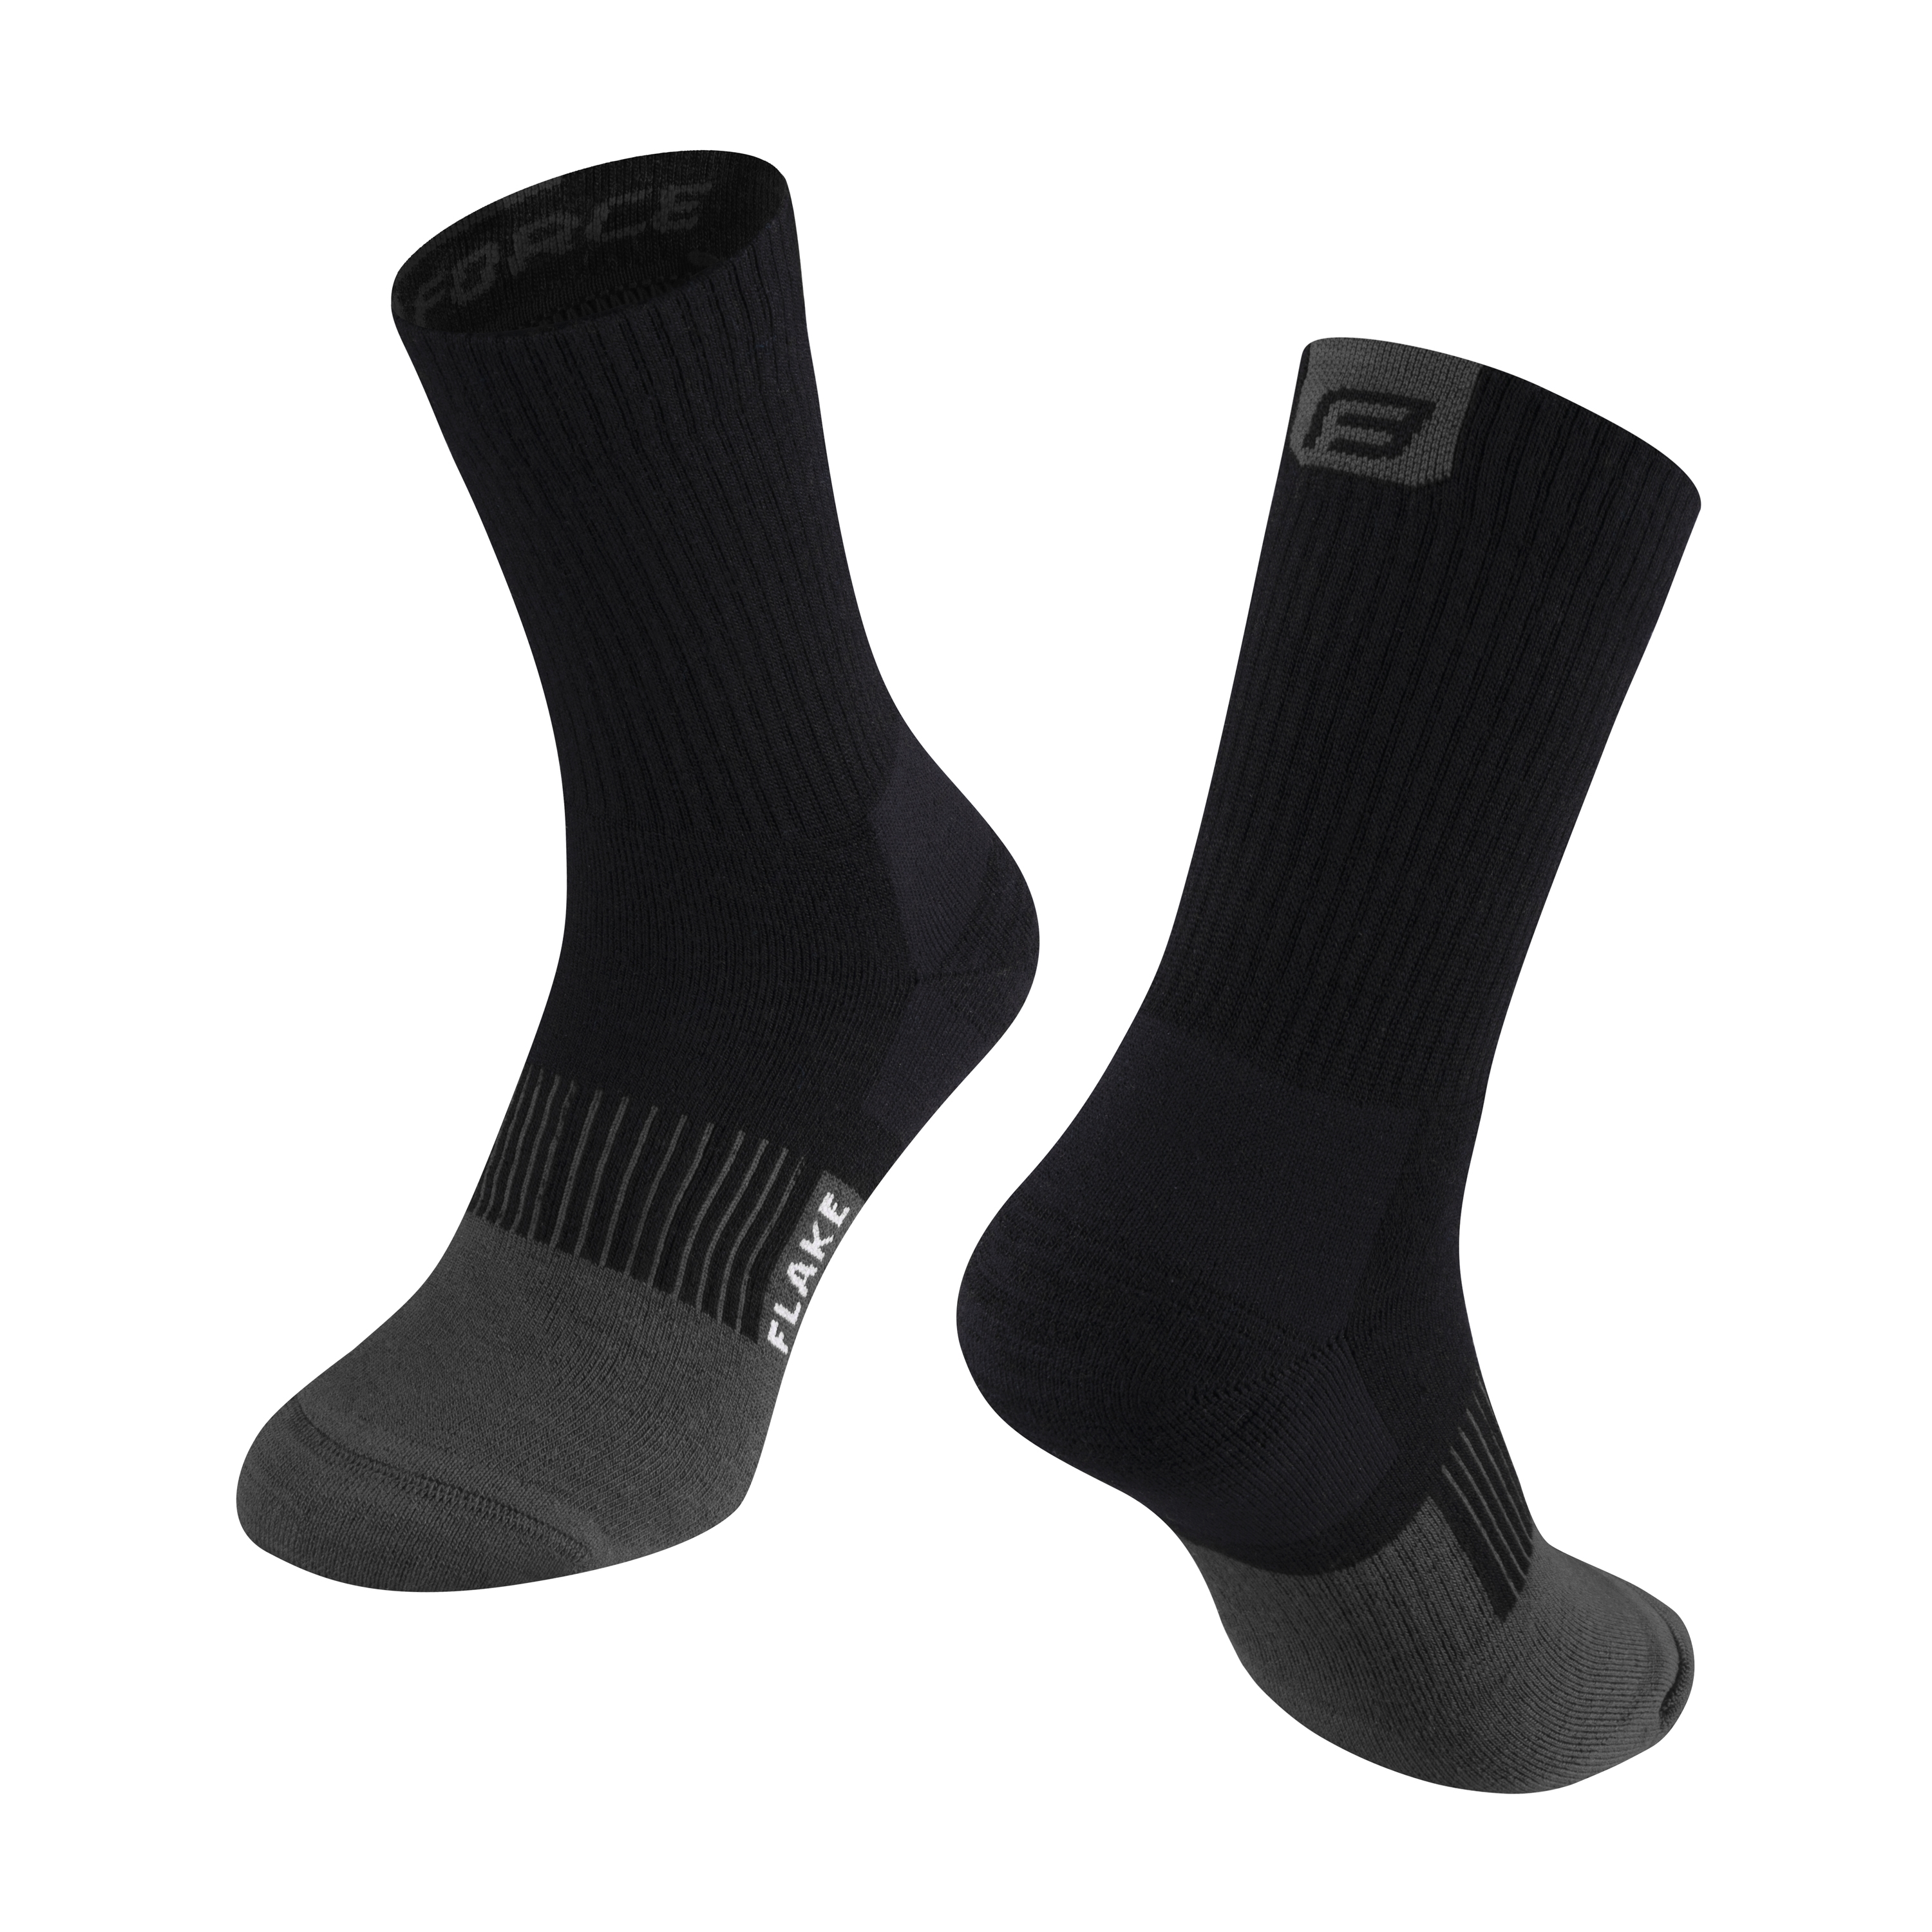 ponožky FORCE FLAKE termo, černo-šedé S-M/36-41 Velikost: S-M